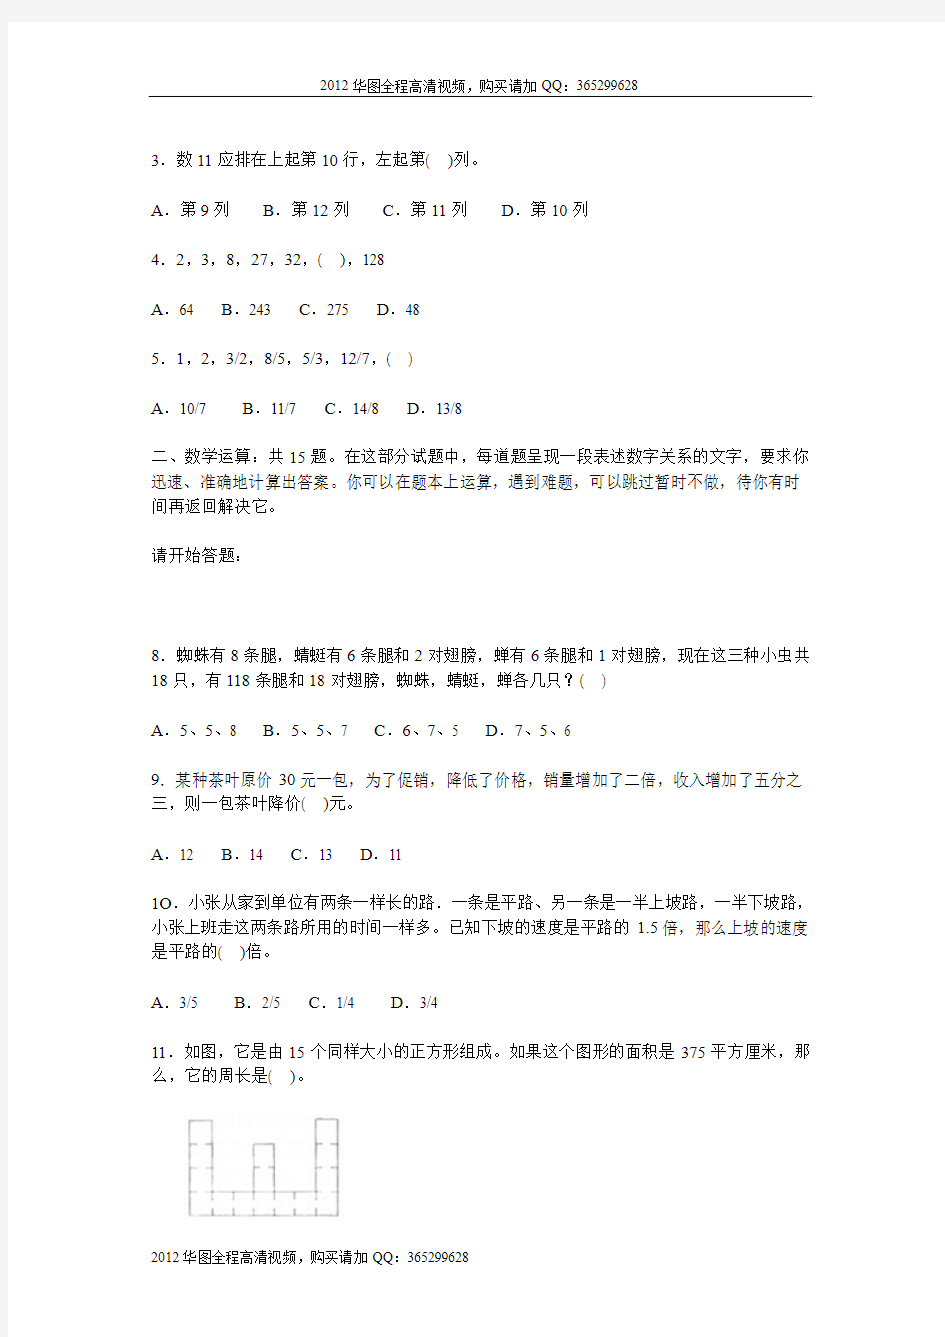 2009年云南省公务员考试《行政职业能力测验》试题及答案解析